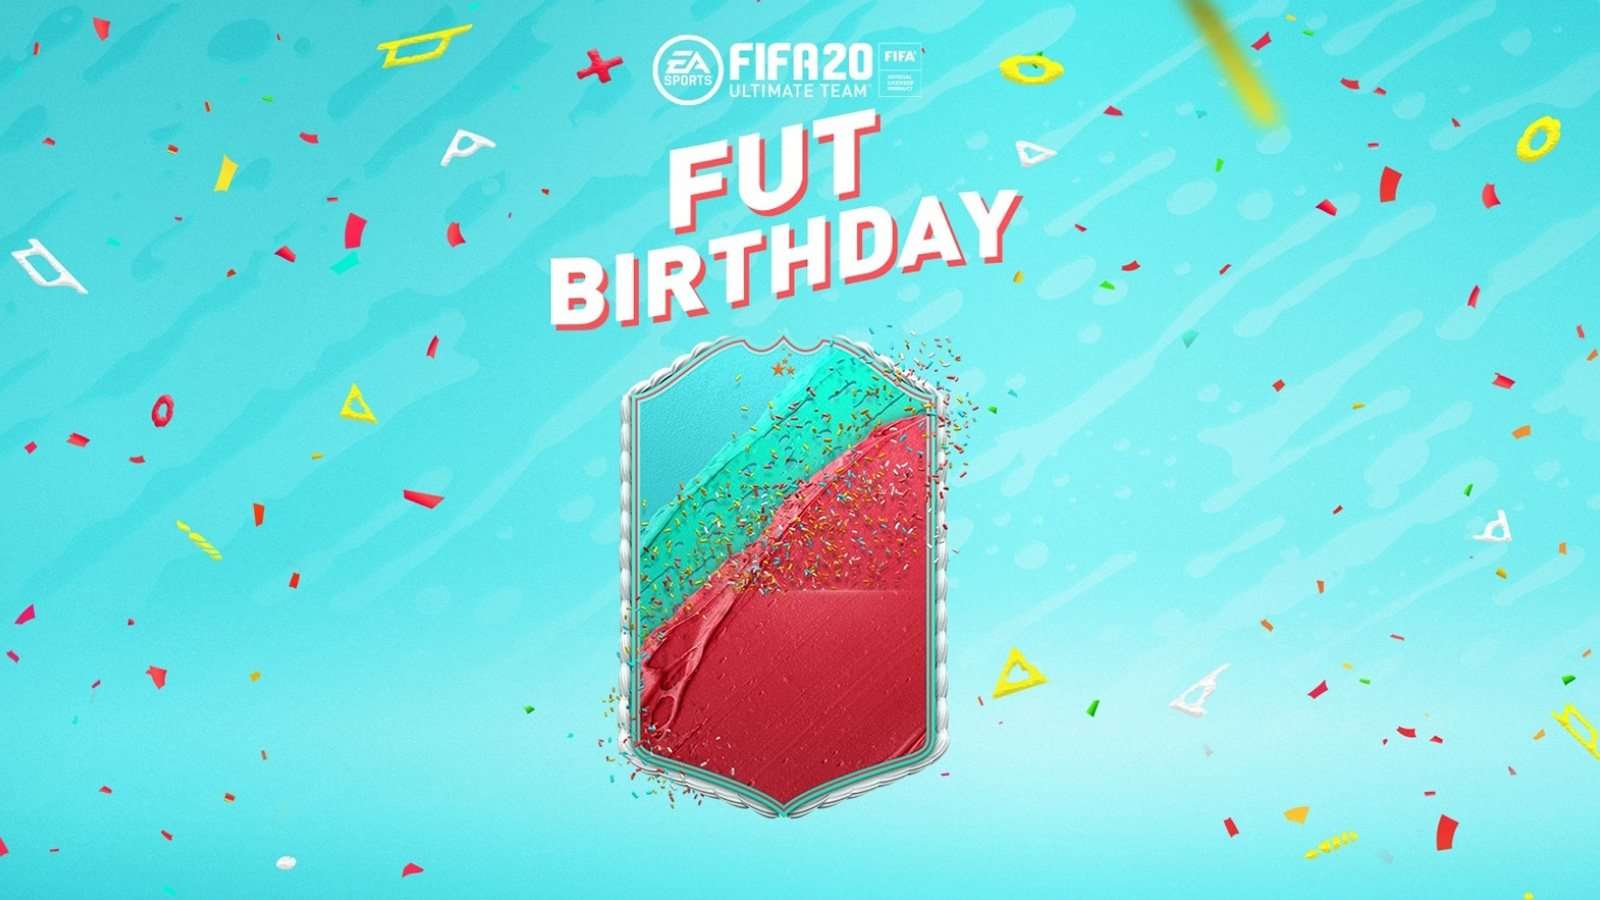 Evenement FUT Birthday sur FIFA 20